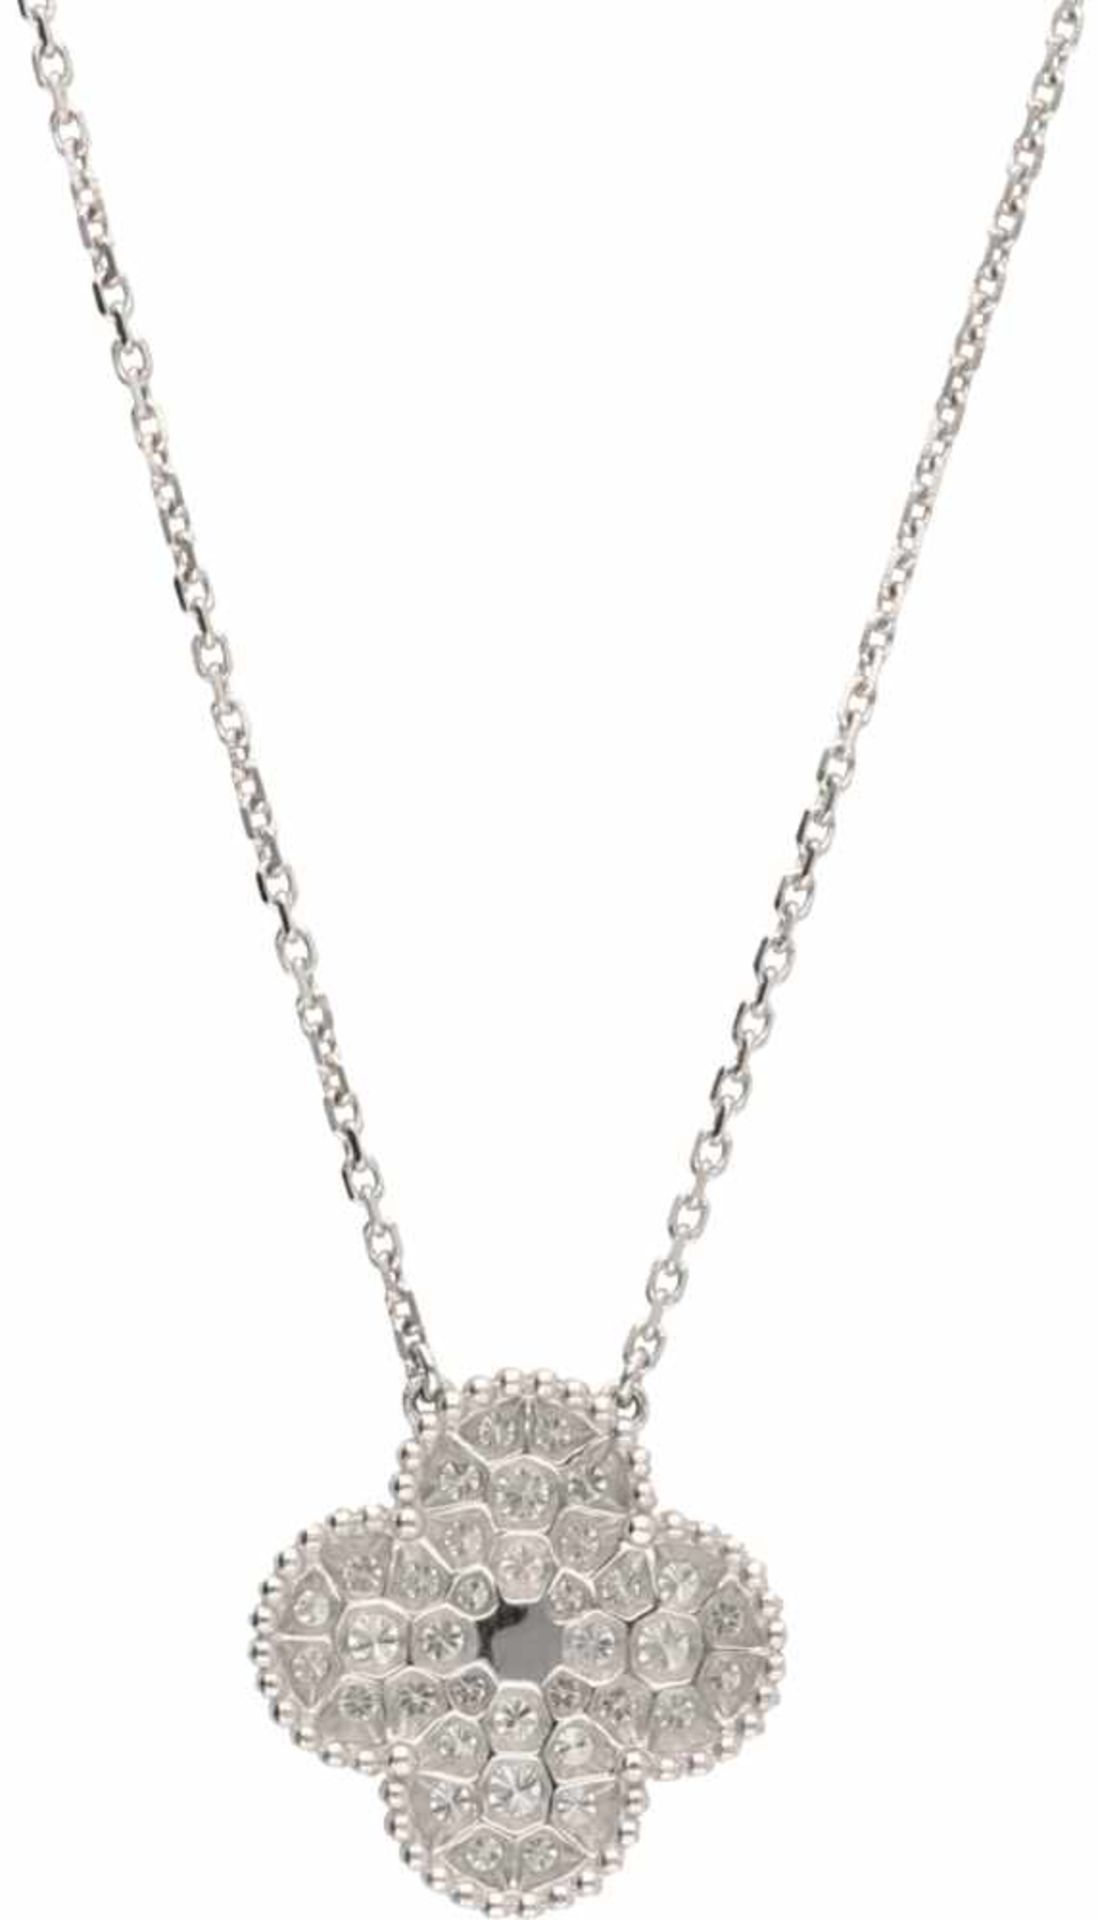 Van Cleef & Arpels necklace with Magic Alhambra pendant white gold, ca. 0.88 carat diamond - 18 ct. - Bild 2 aus 7